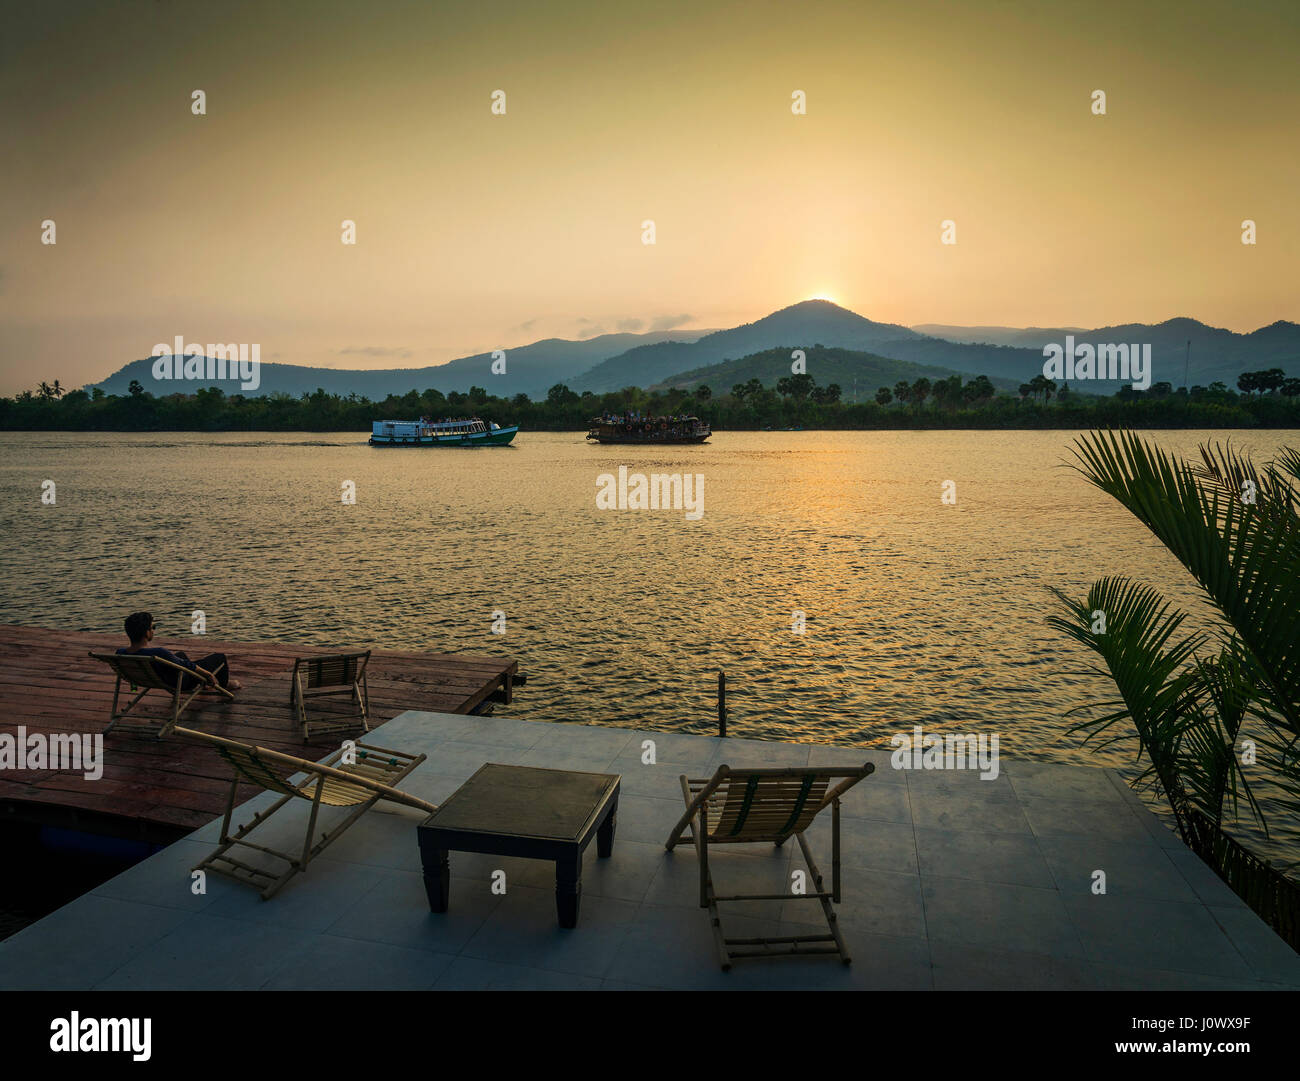 Riverside vista al tramonto in kampot cambogia asia con rilassanti sedie a sdraio e traghetti Foto Stock